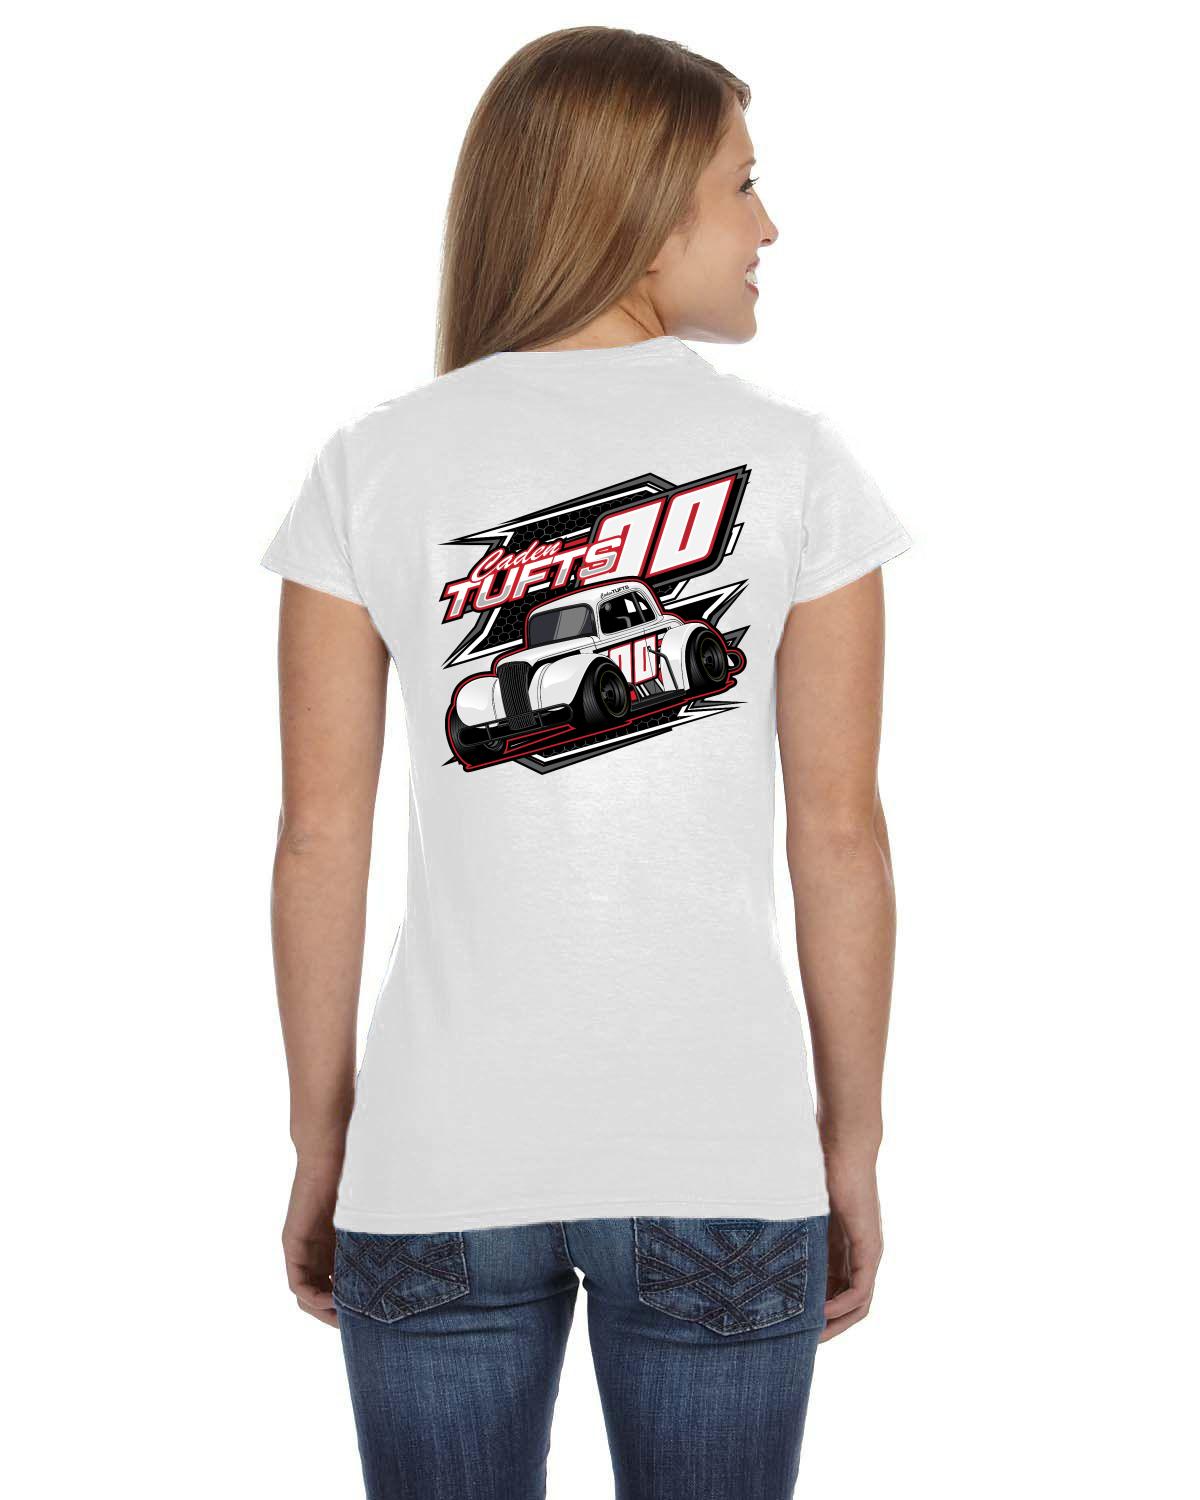 Caden Tufts Legends Racing Ladies fit tshirt